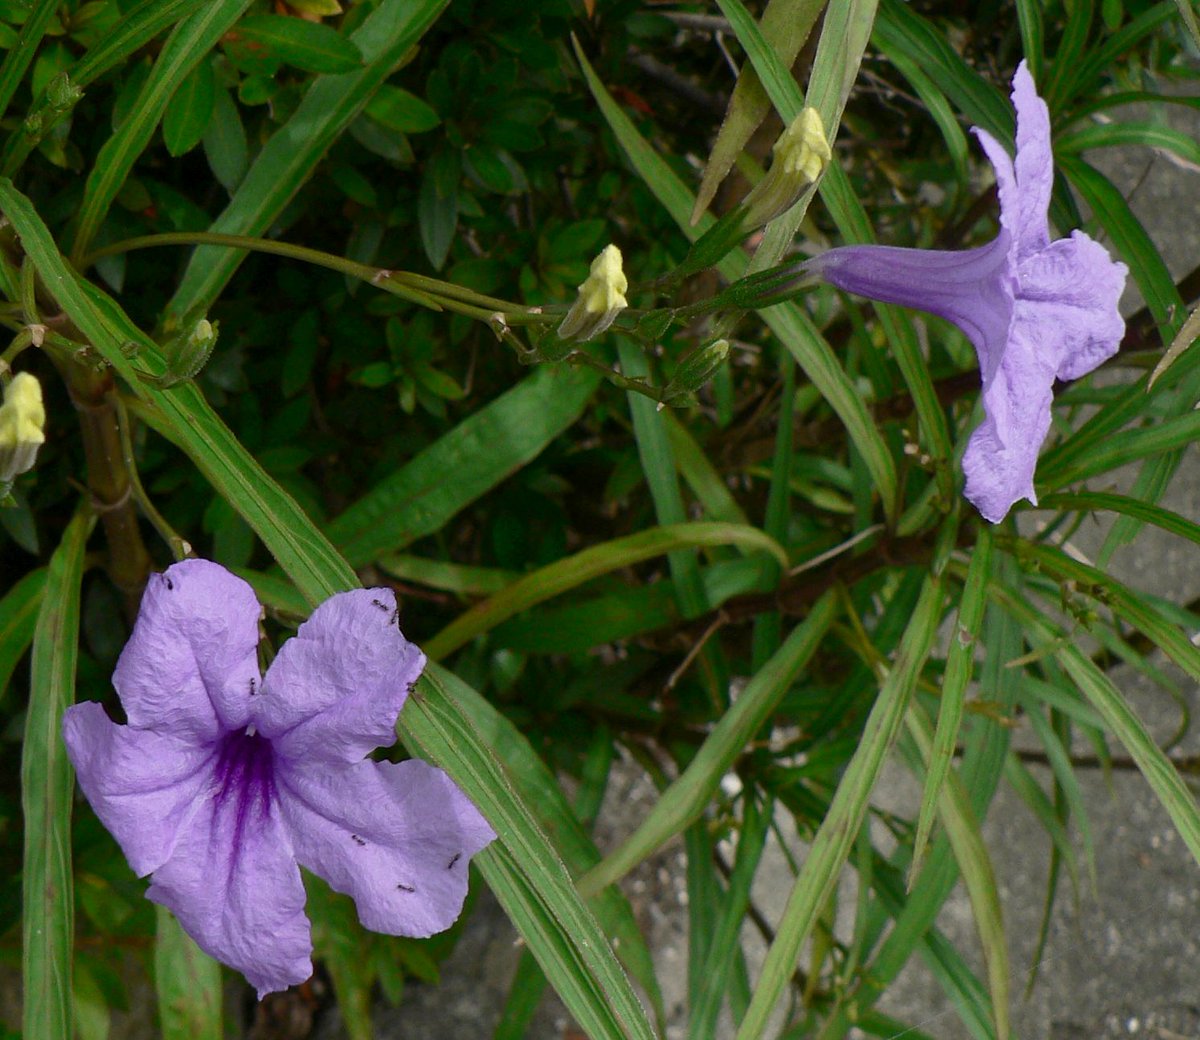 こころんグリーン على تويتر 近所の空き地に ムラサキルエリアの花が咲いていました 紫のふわふわの花が 可愛らしいです ムラサキ ルエリアも とても逞しい花です ムラサキルエリア 紫の花 逞しい花 夏の花 夏 山野草 野草 園芸 ガーデニング 熊本市